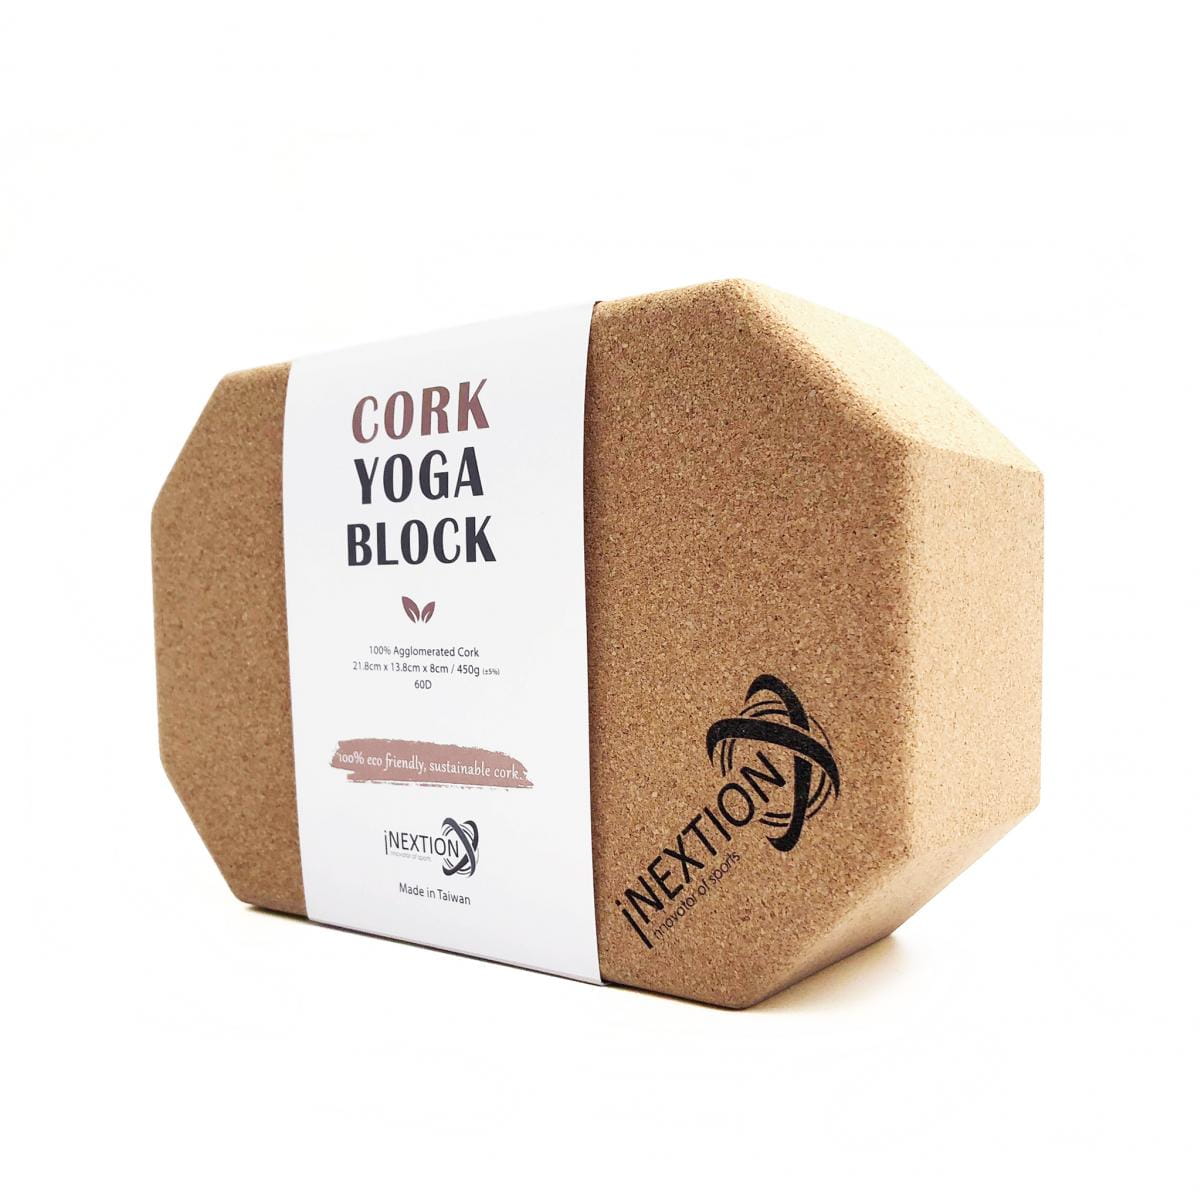 【INEXTION】Cork Yoga Block 羽量級八角軟木瑜珈磚 60D 1